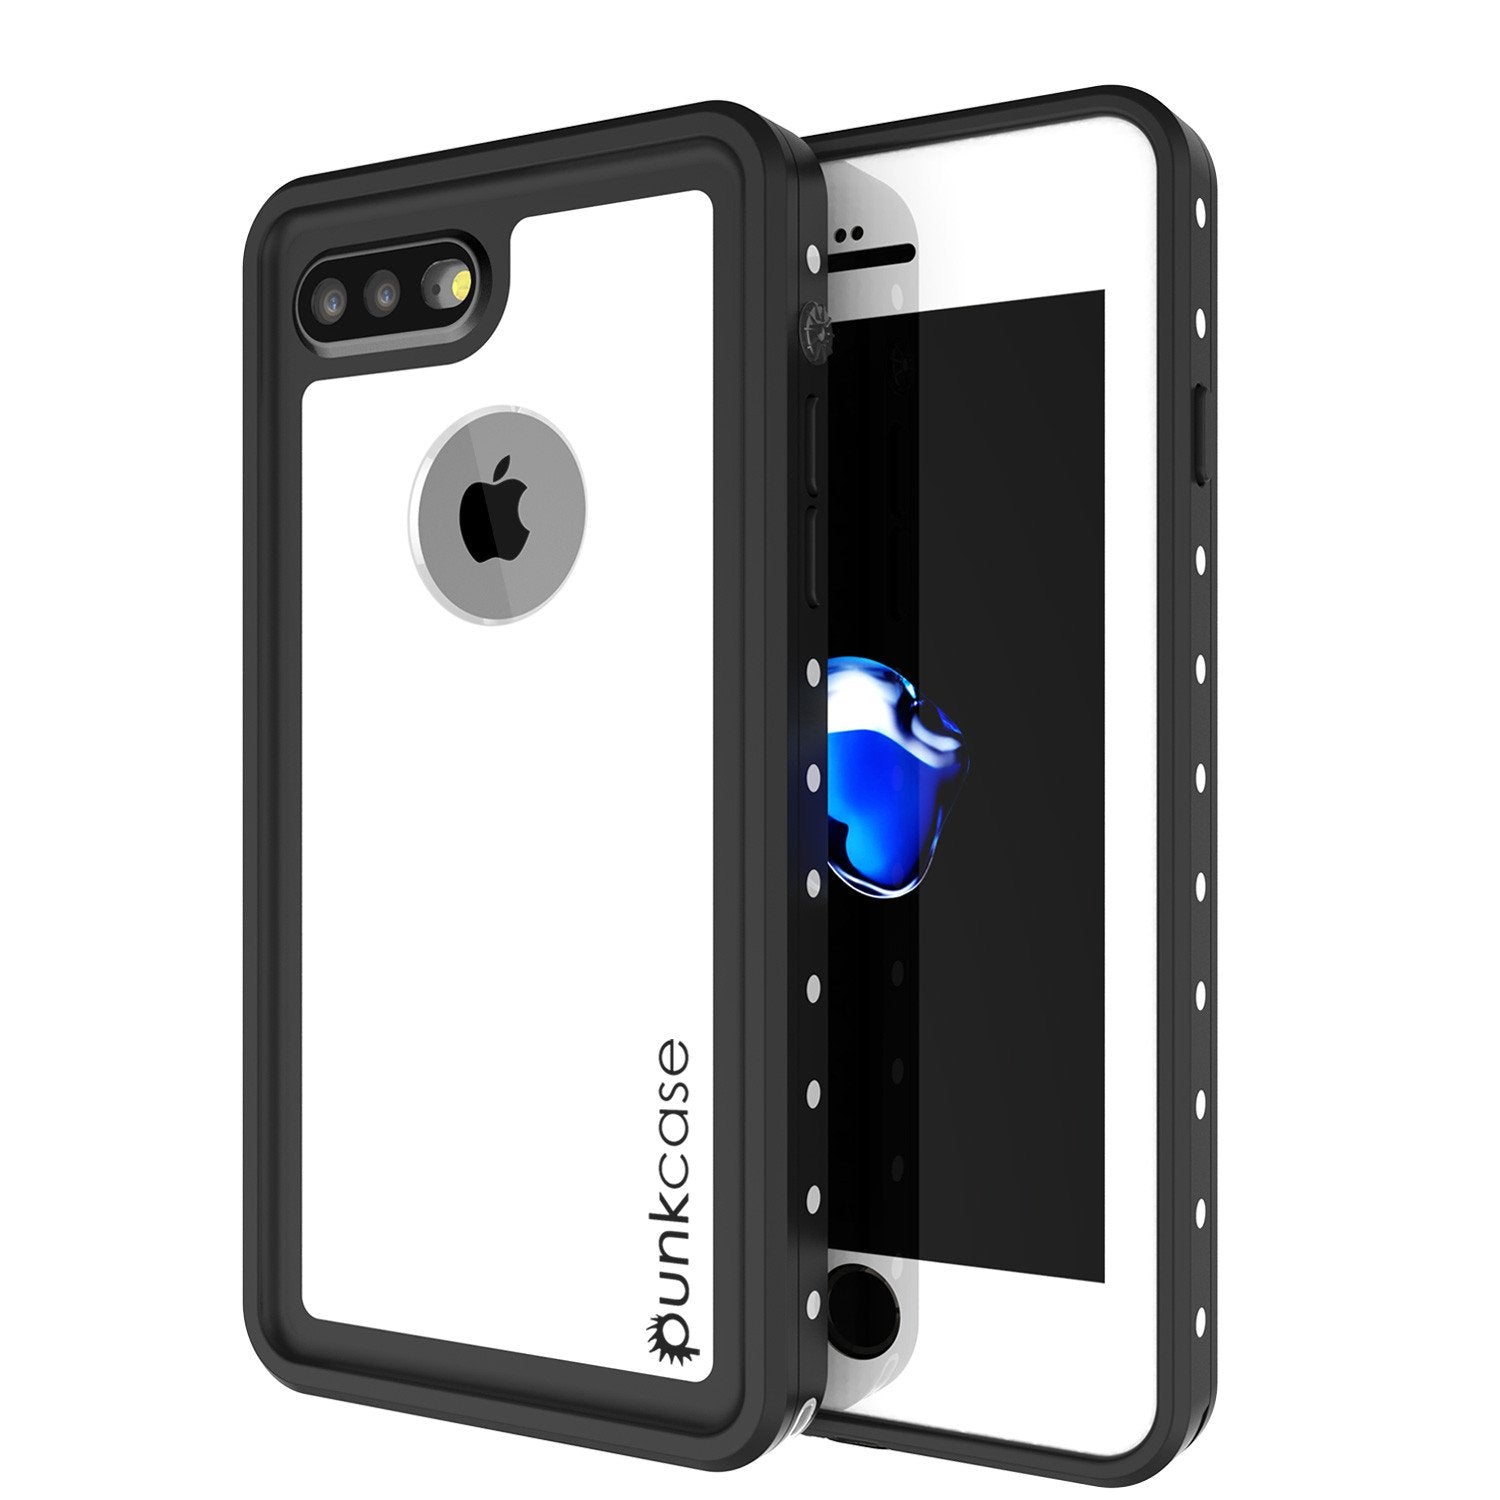 iPhone 7+ Plus Waterproof IP68 Case, Punkcase [White] [StudStar Series] [Slim Fit] [Dirtproof] - PunkCase NZ